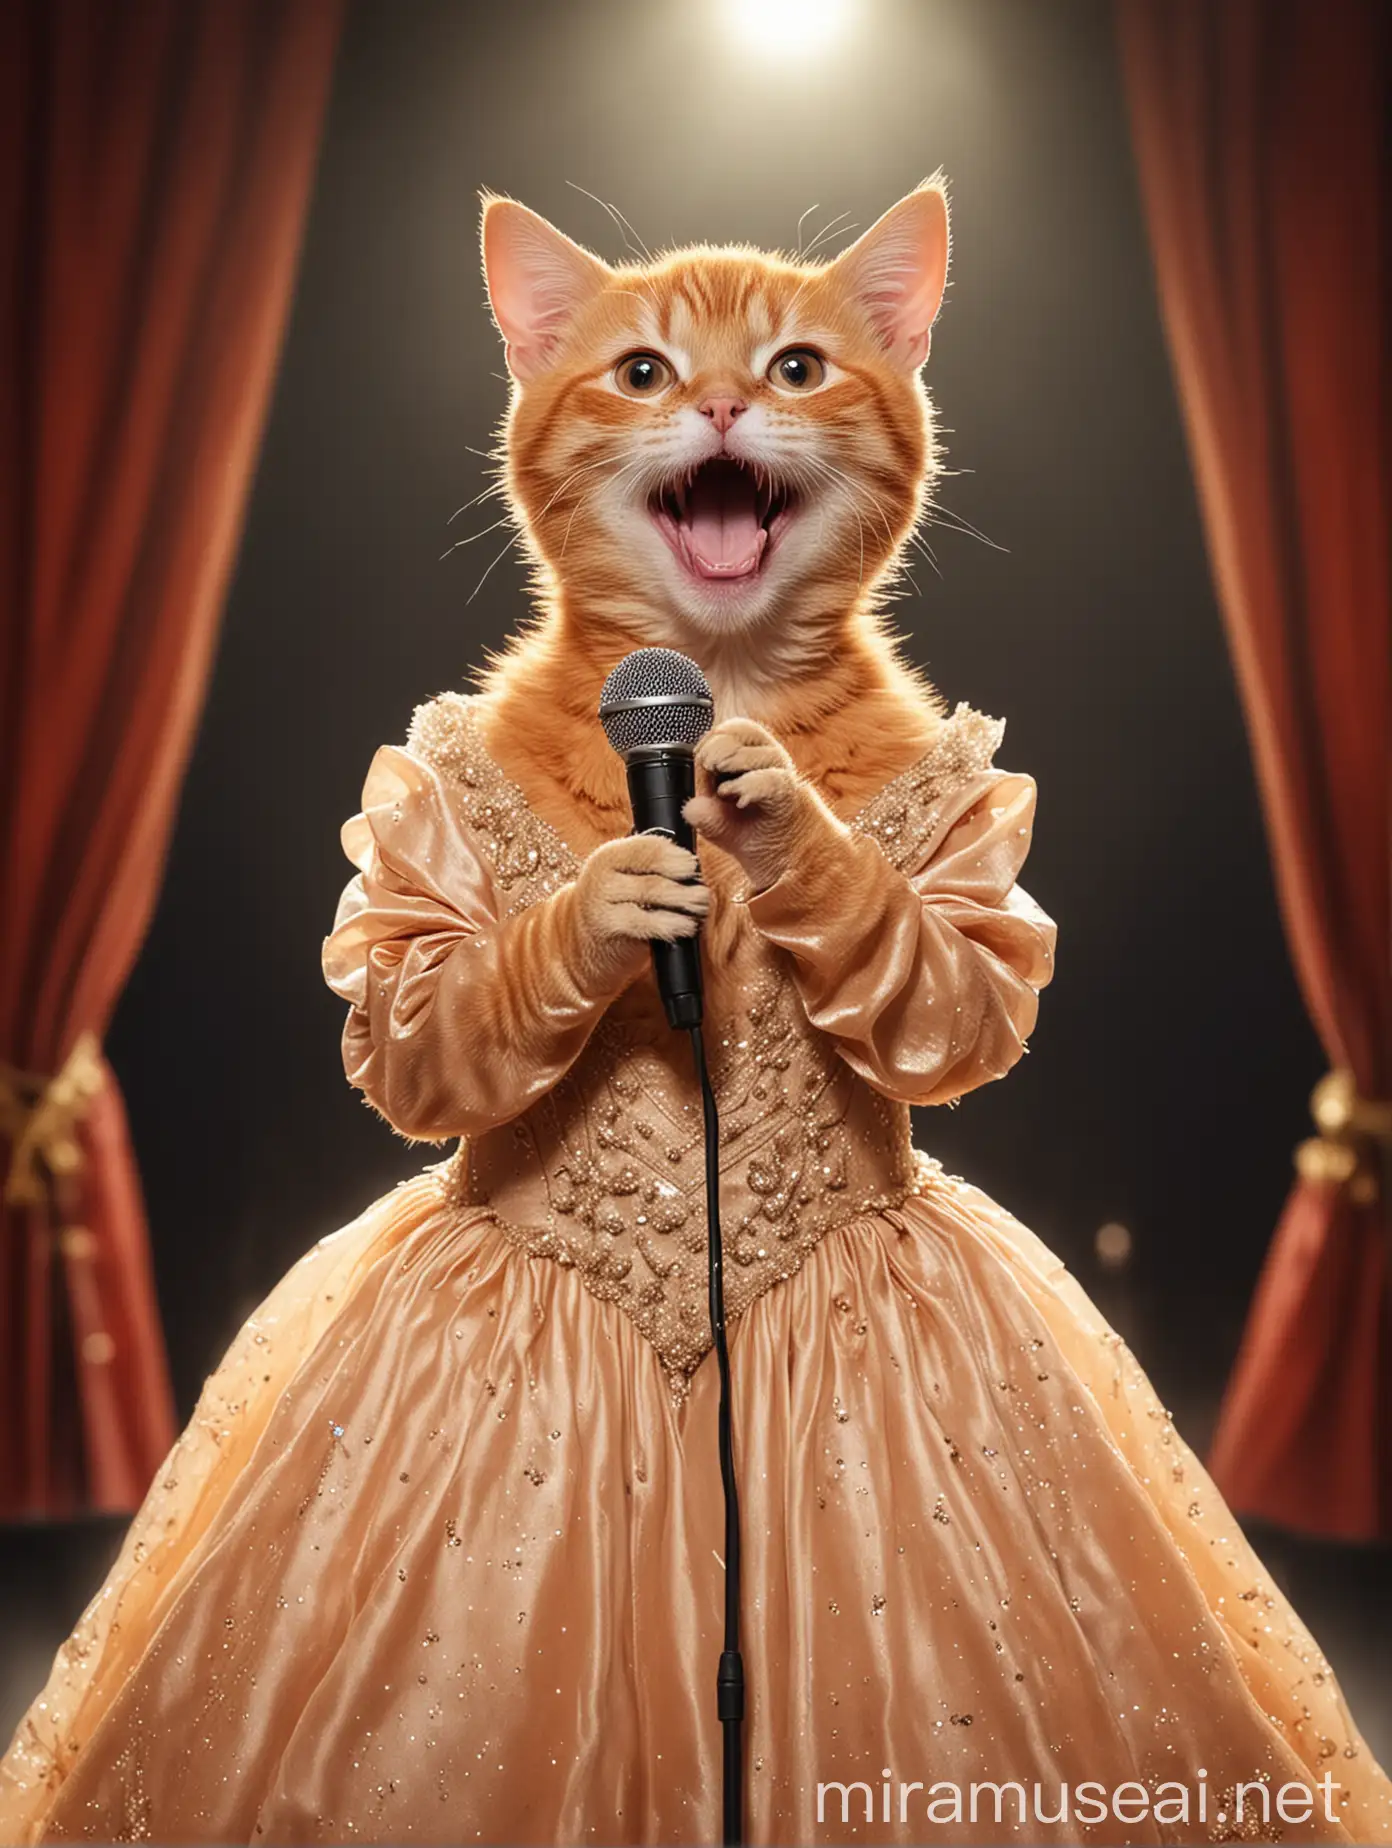 Elegant Evening Performance Singing Orange Cat in Evening Gown